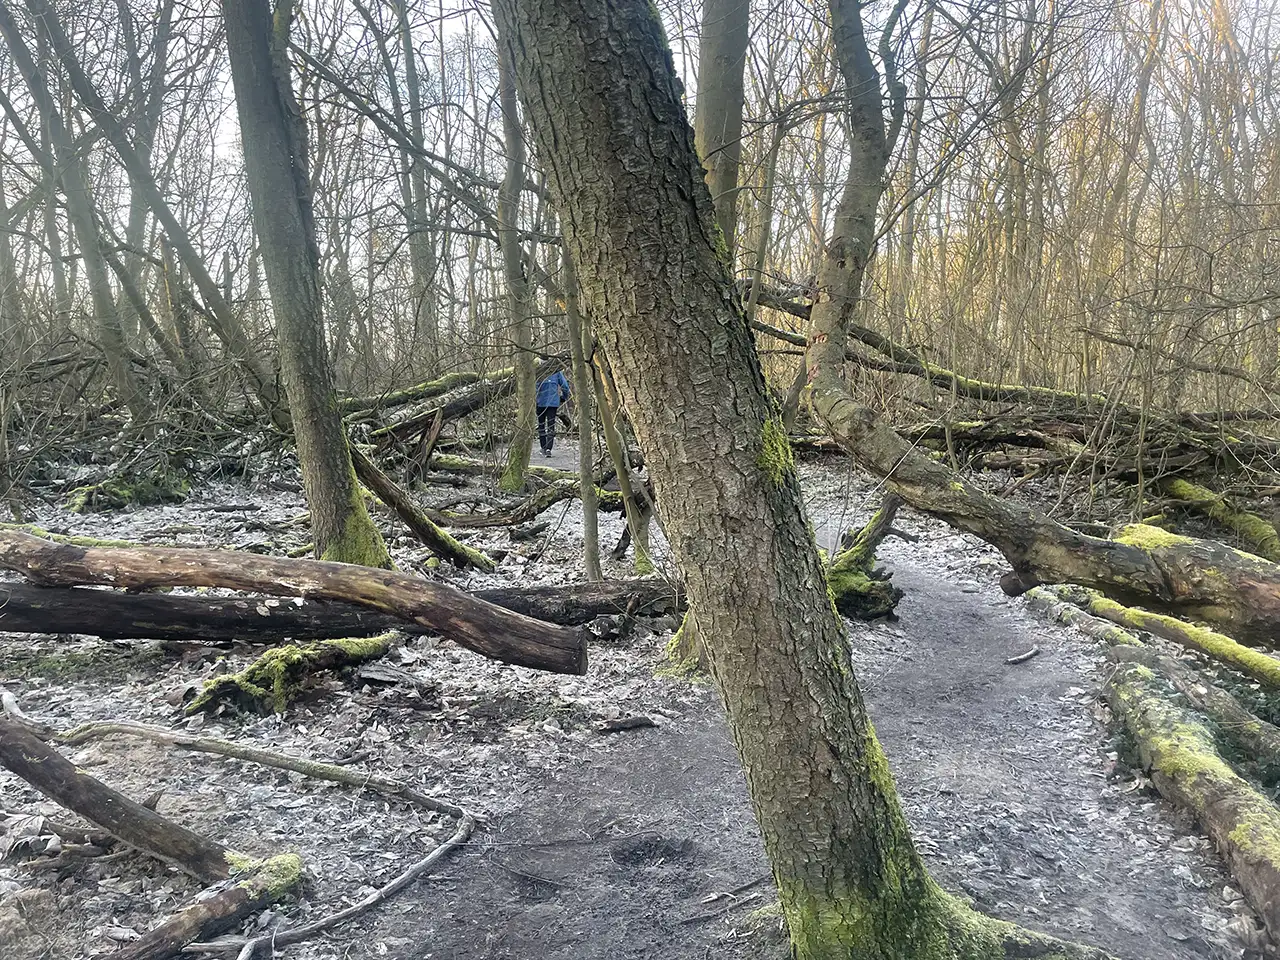 Schräg stehende und umgestürzte Bäume, im Hintergrund halb versteckt ein Läufer